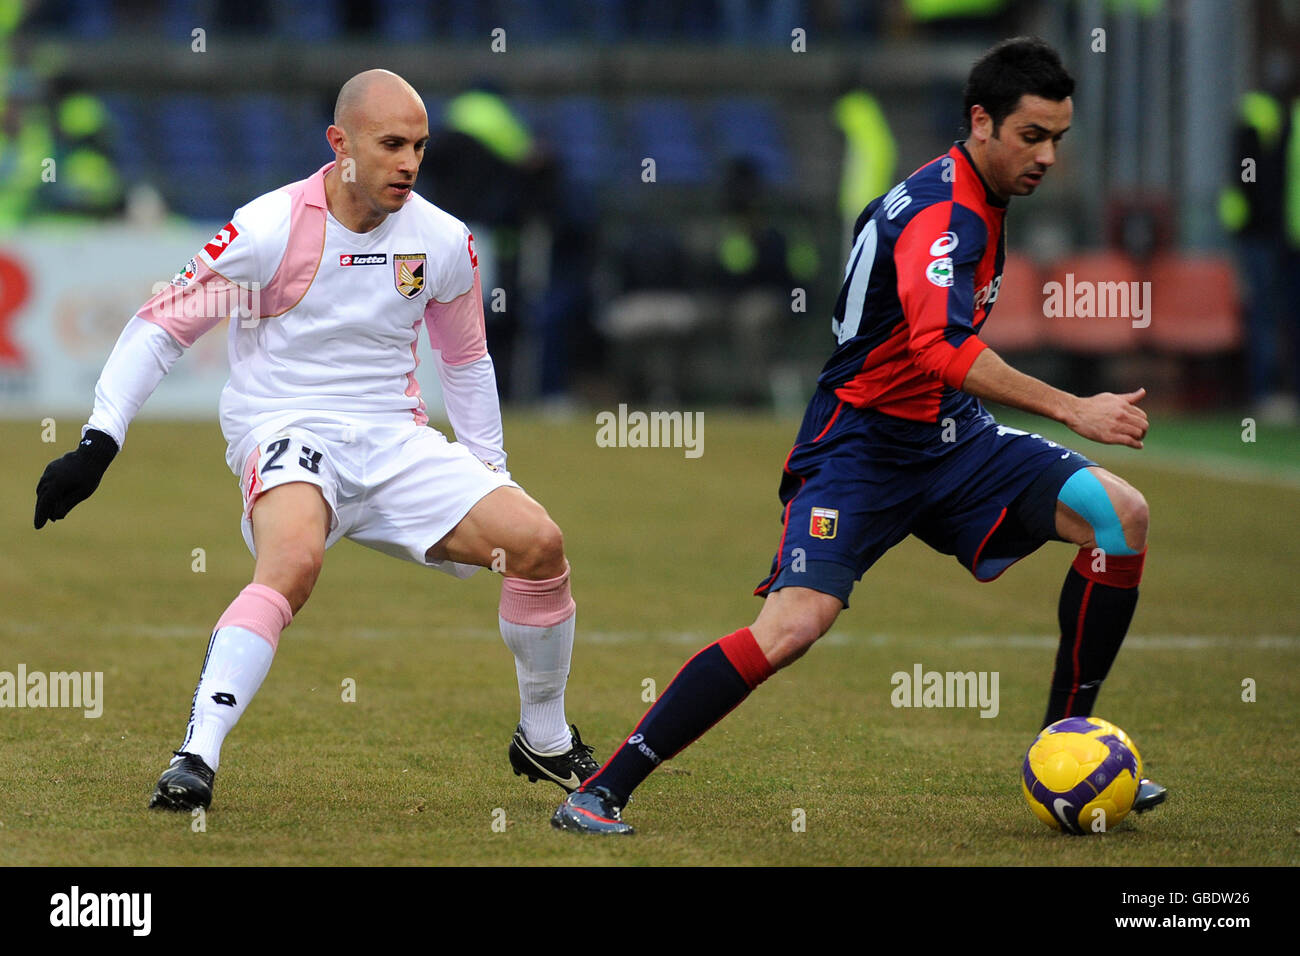 Soccer - Italian Serie A - Genoa v Palermo - Comunale Luigi Ferraris. Genoa's Giandomenico Mesto (right) in action with Palermo's Mark Bresciano. Stock Photo